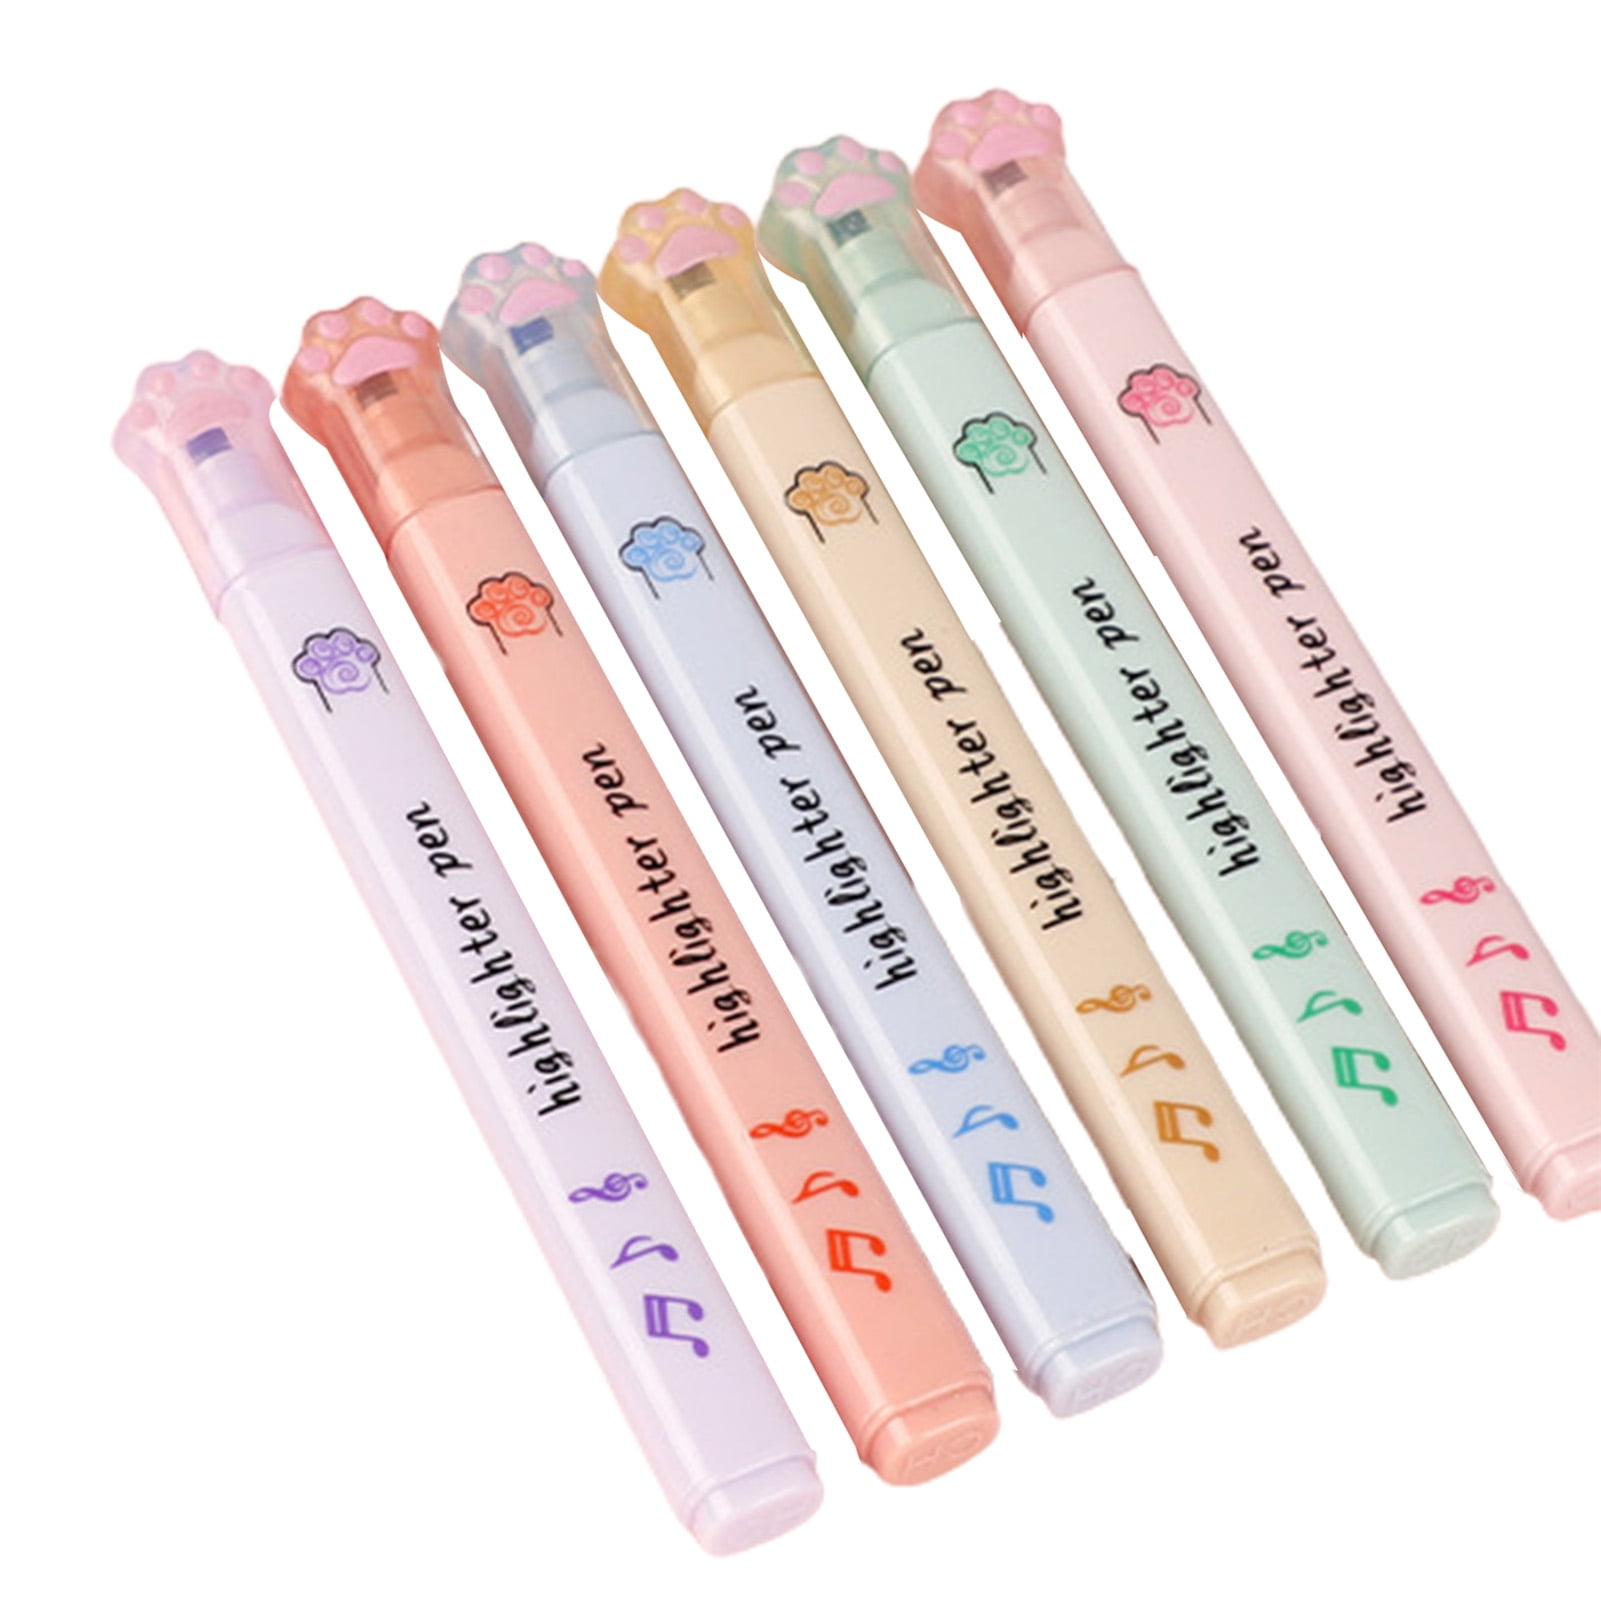  ACUOTN Anime Pens 6pcs Colors Pens Fluorescent Pen